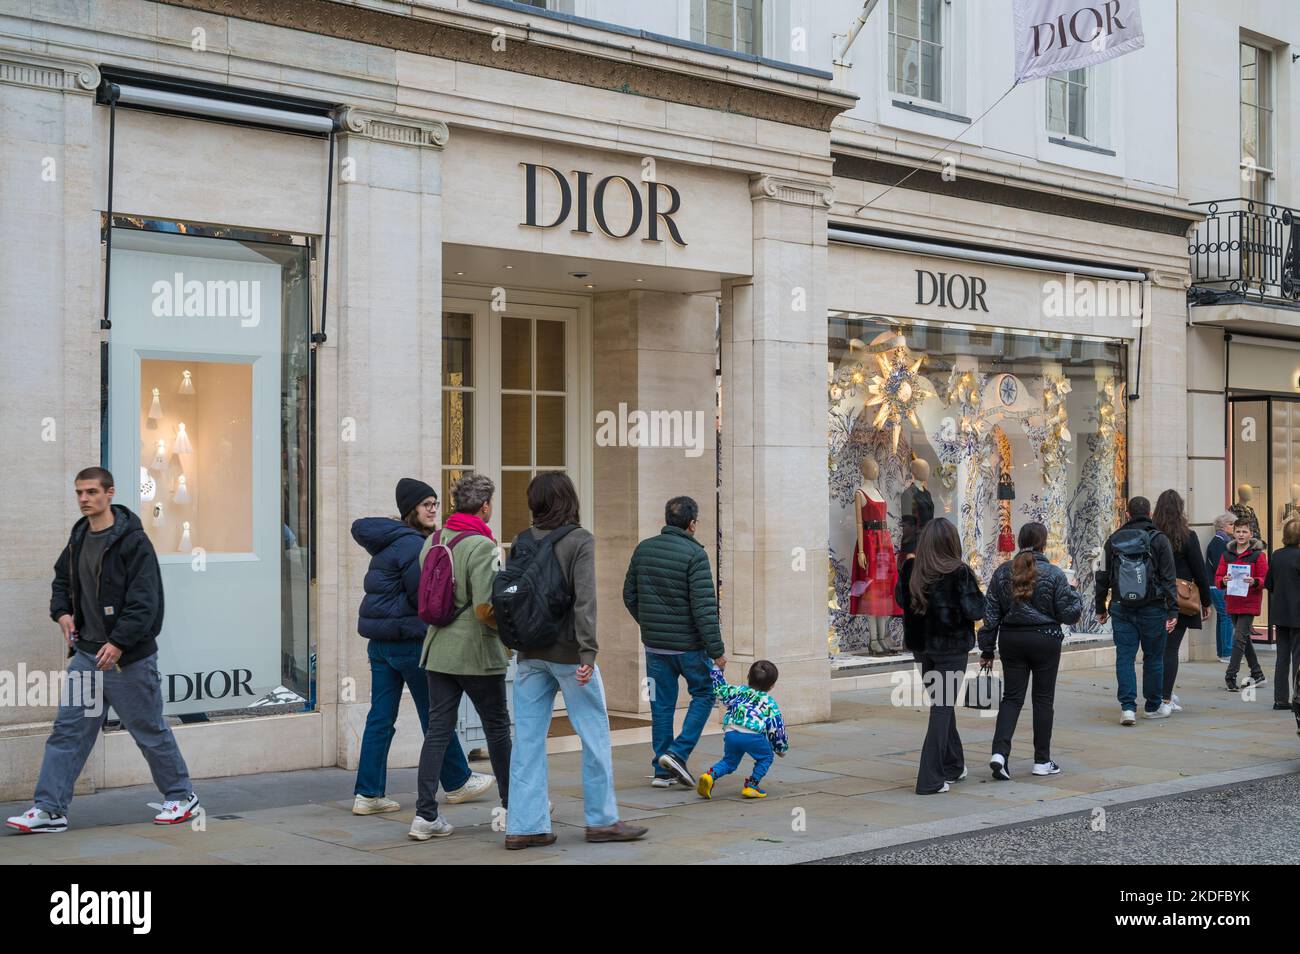 Les gens qui font du shopping passent par le magasin de mode Dior sur New Bond Street, Mayfair, Londres, Angleterre, Royaume-Uni Banque D'Images